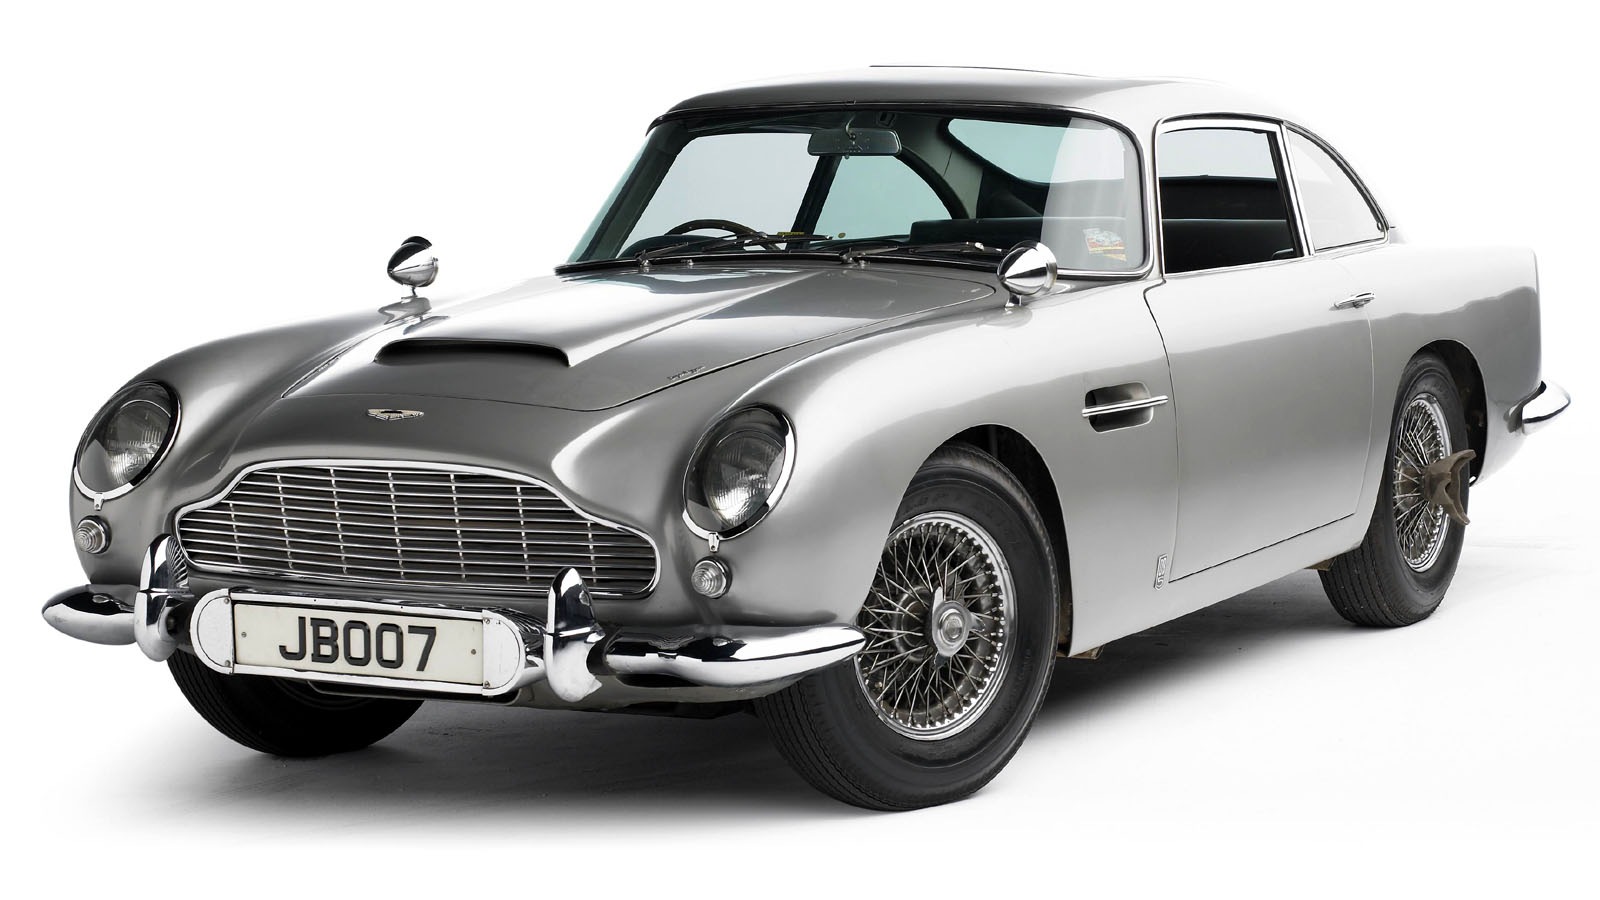 Kolekcijas Aston Martin automašīna, ko attēlo New Bond Street Pawnbrokers, Londonas elitārais lombards, kura galvenais Londonas lombards atrodas Bond Street. Viņi aizdod un aizķer pret Aston Martin automašīnām